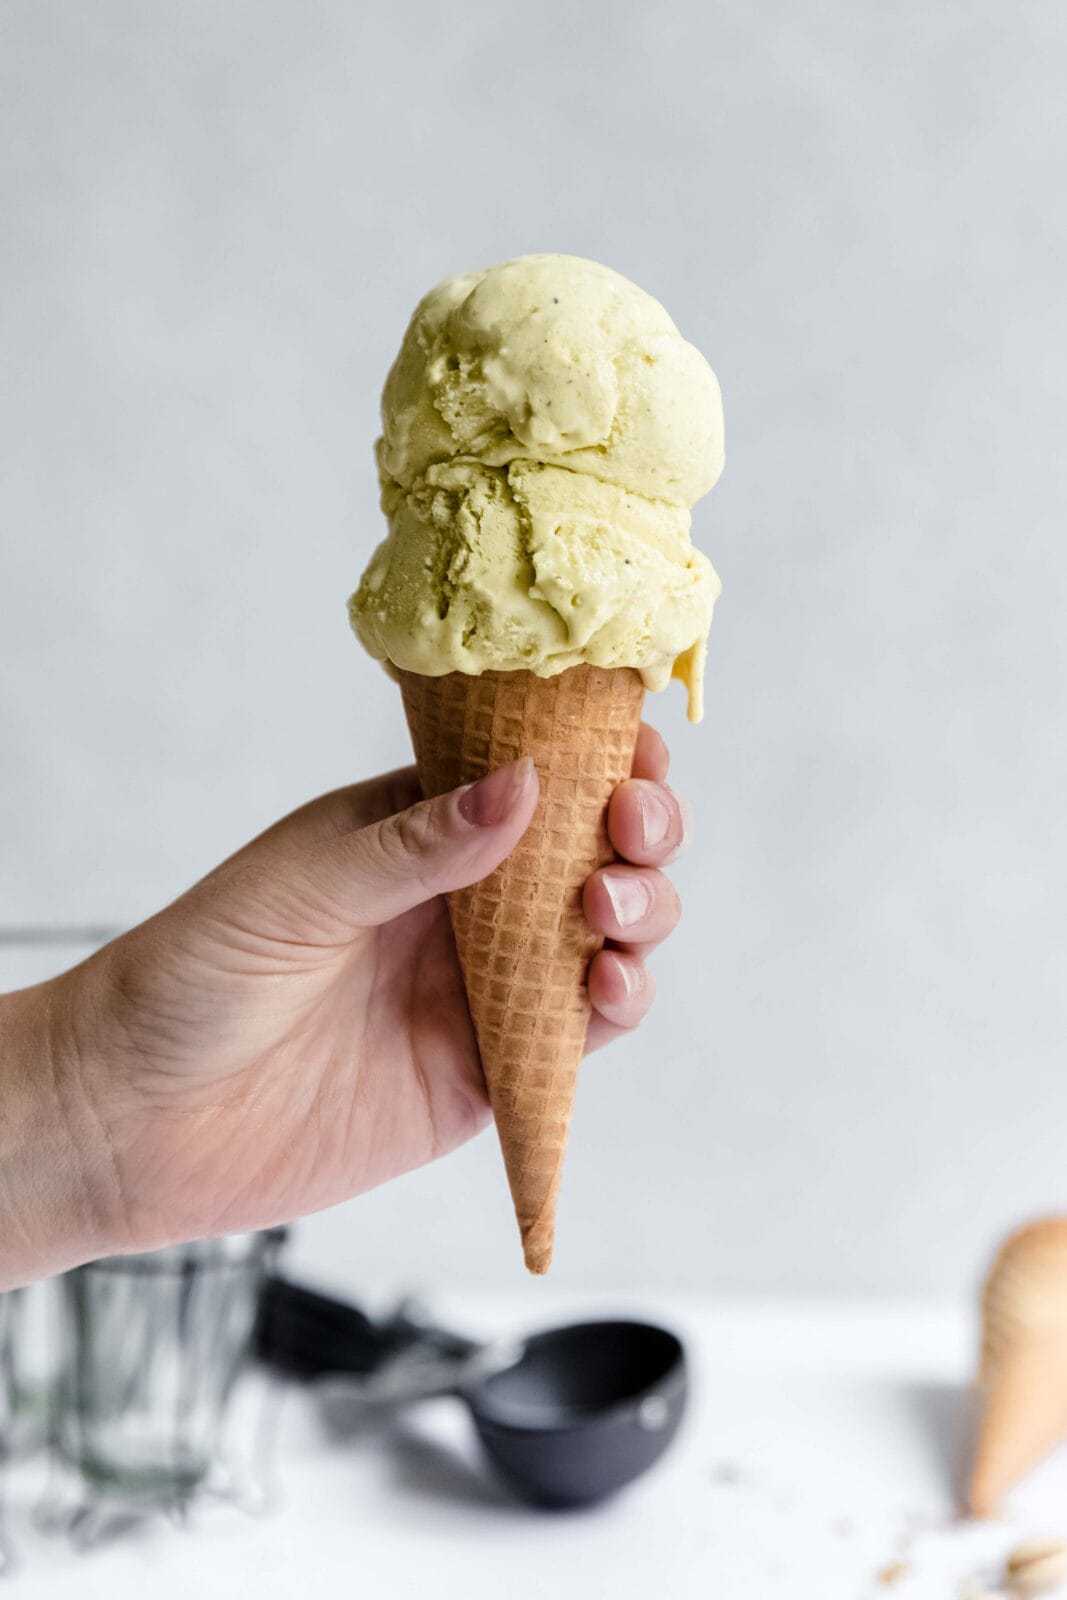 homemade pistachio ice cream in a cone